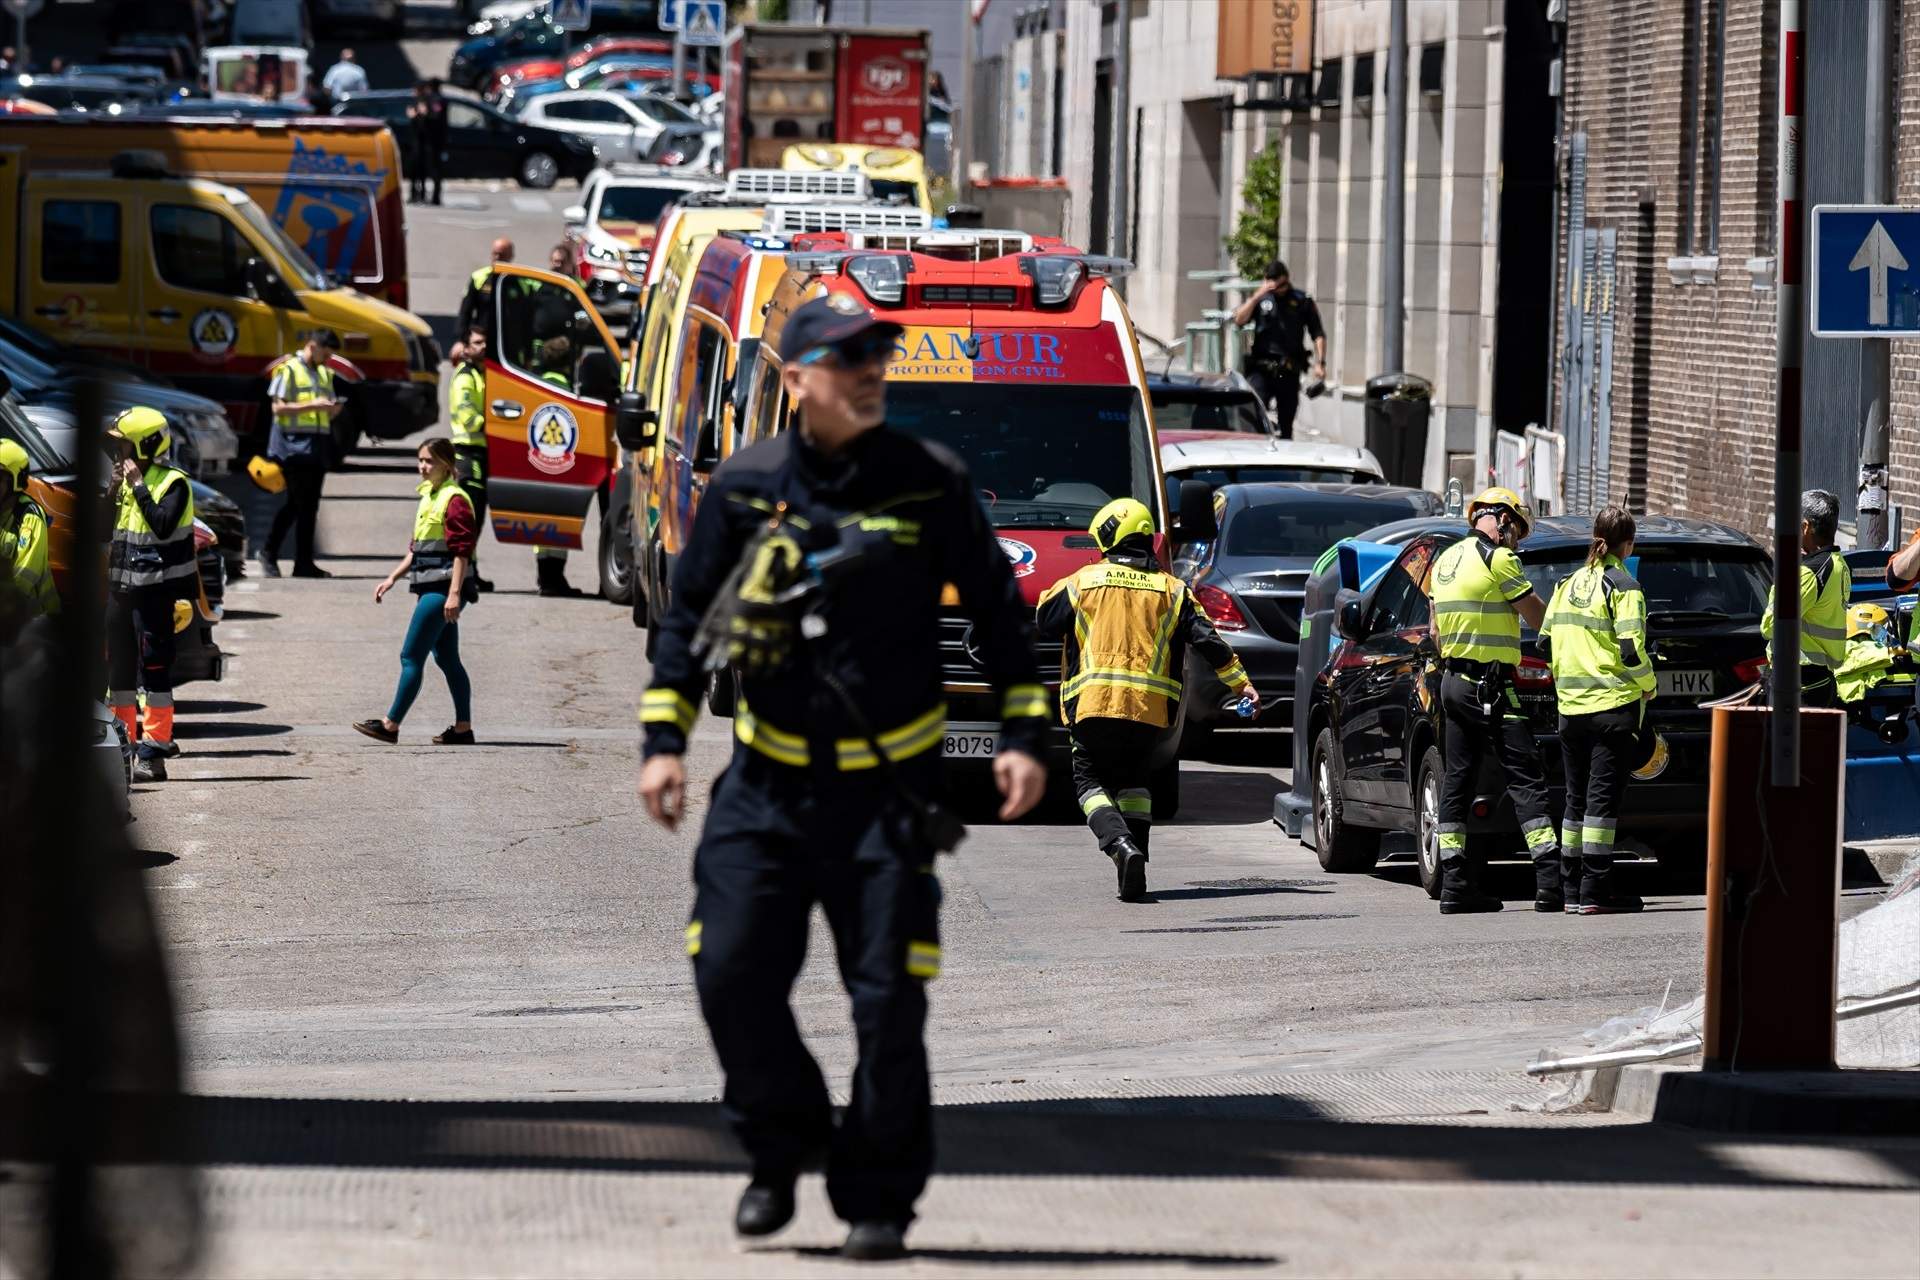 Moren els dos treballadors de l'edifici esfondrat a Madrid: troben els cadàvers sota la runa